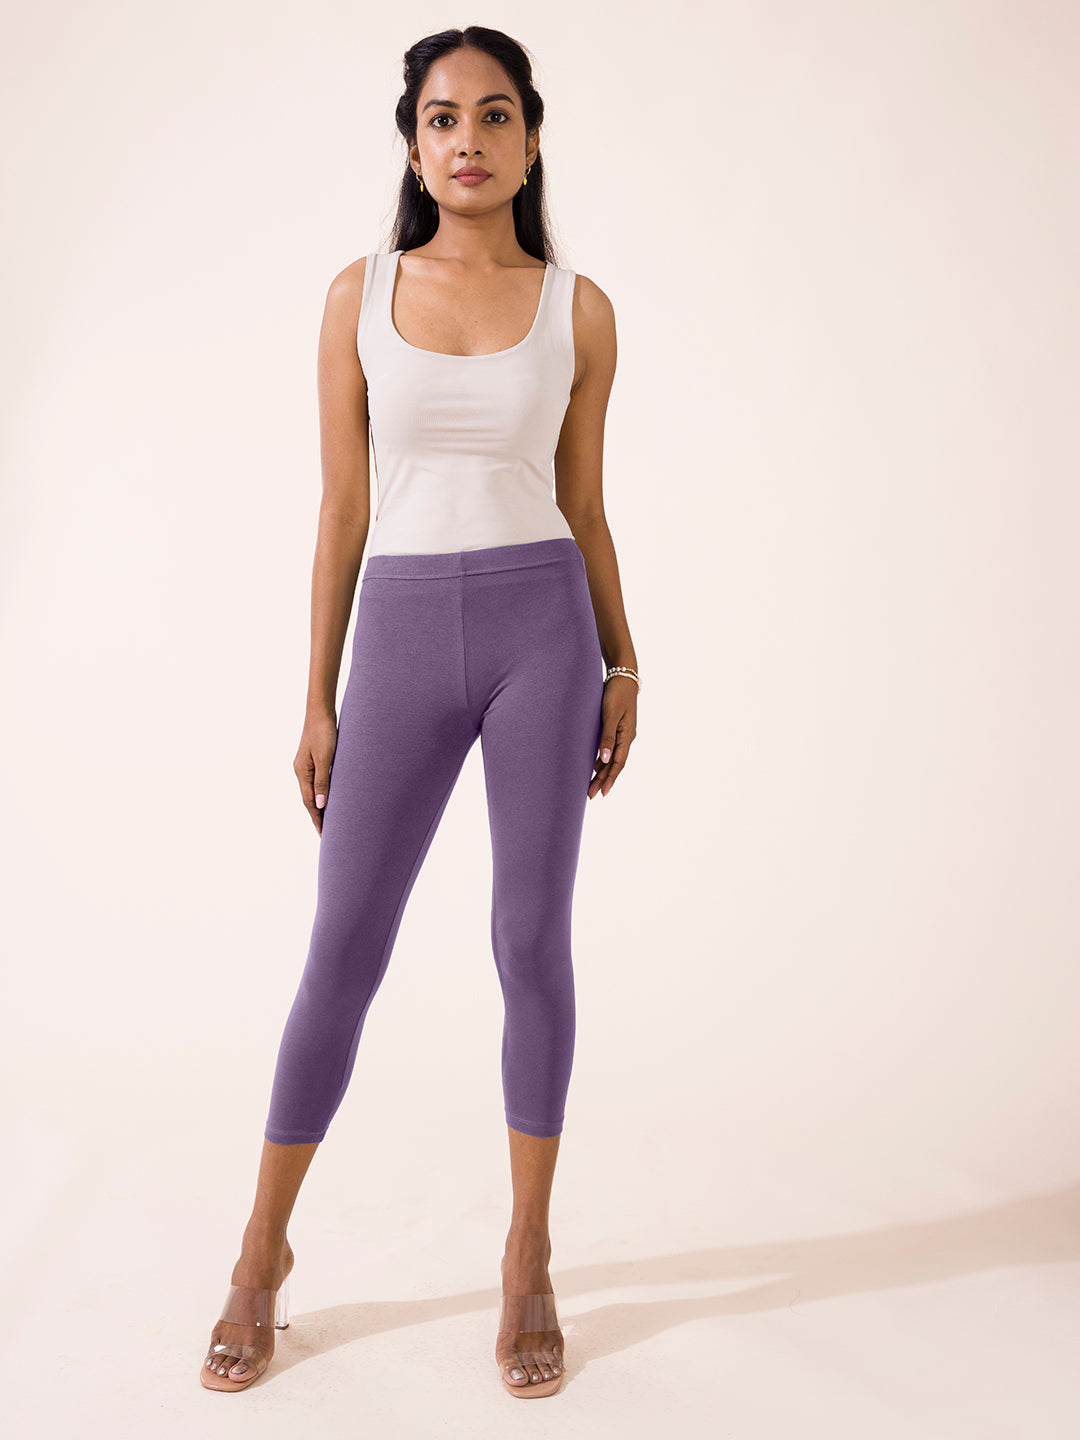 Torrid Purple Tie Dye Stretch Cotton Crop Leggings Womens Size 0 LARGE NEW  | eBay